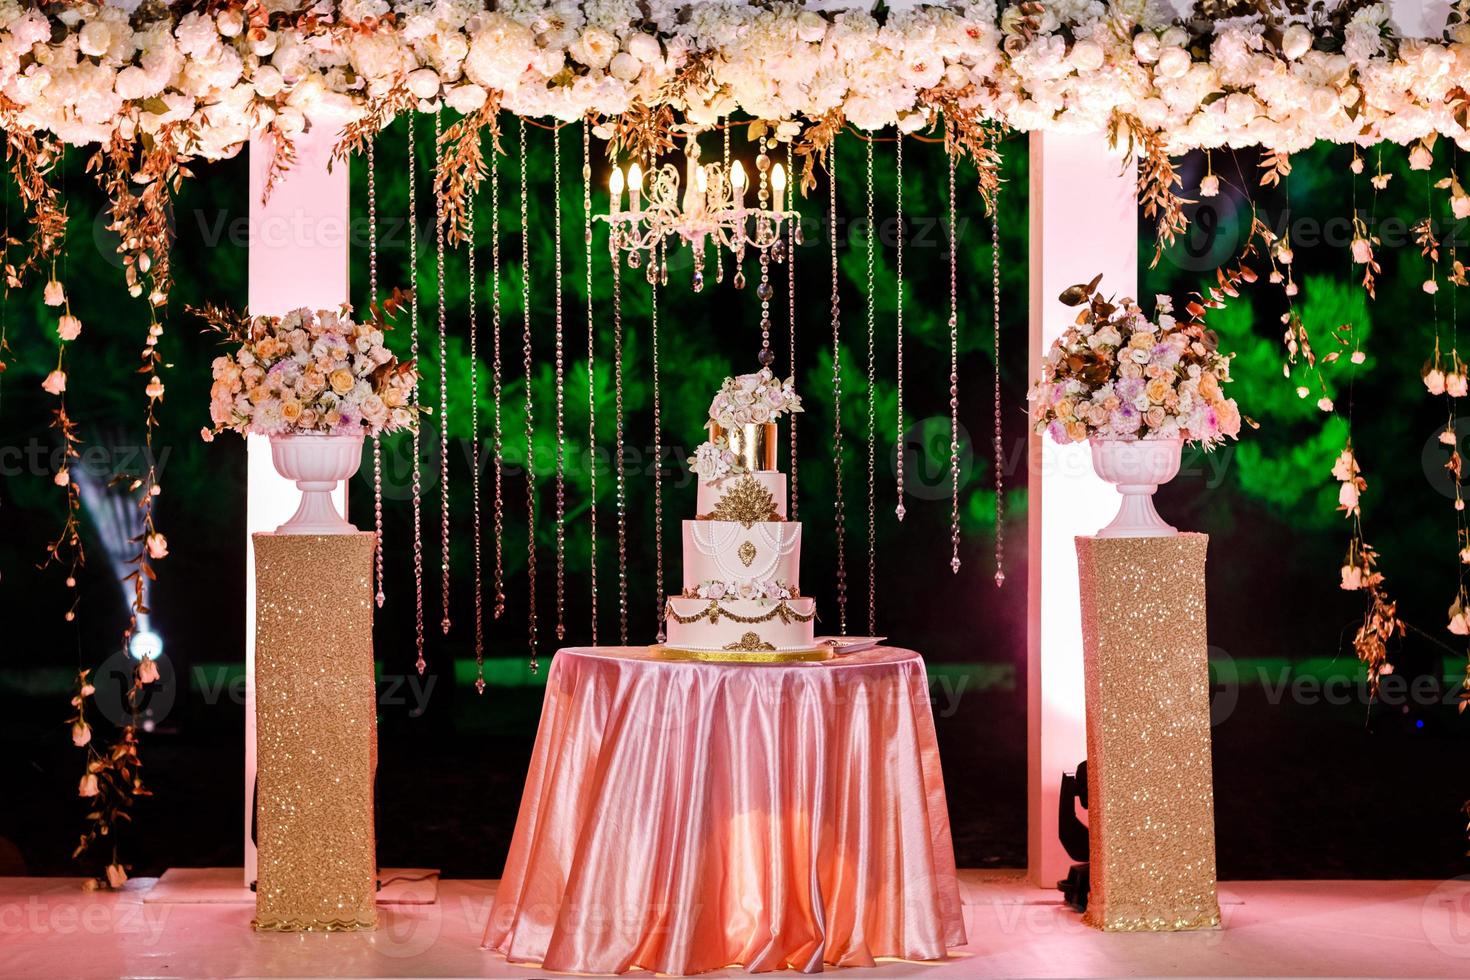 decorações de casamento. mesa com um bolo de casamento, velas, luz e flores. foto